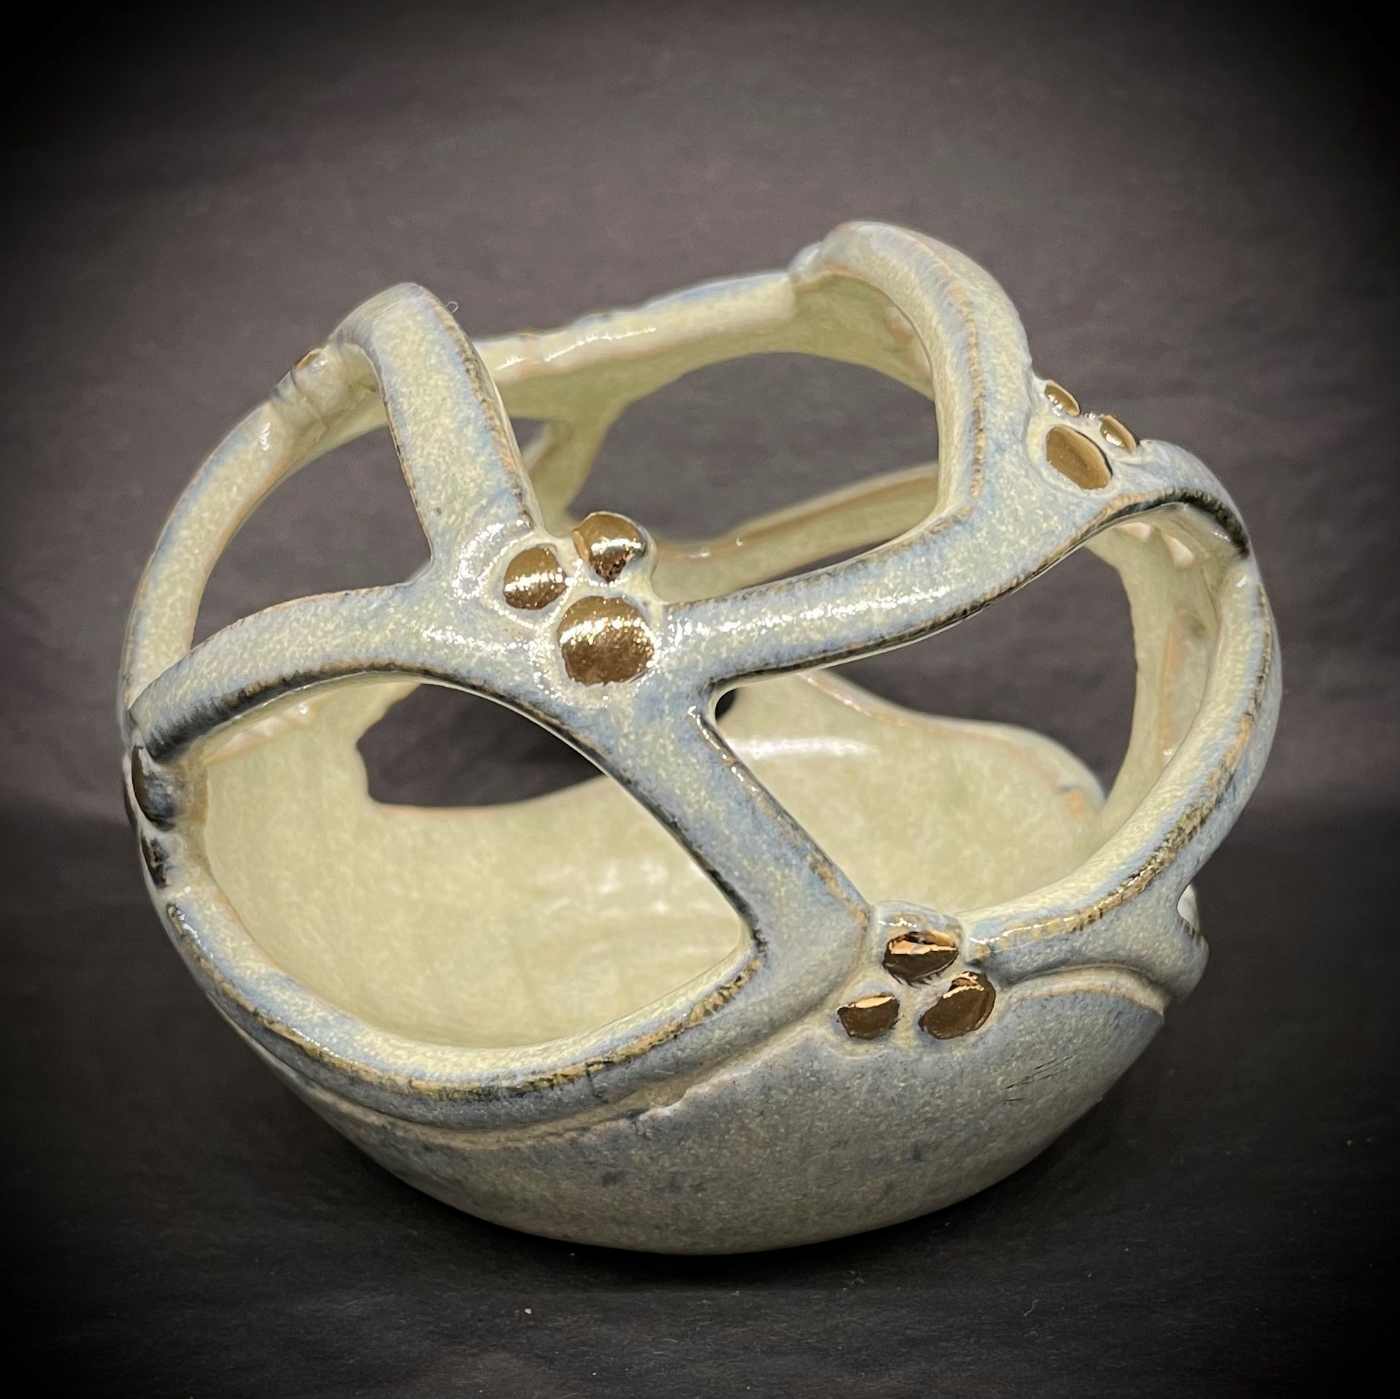 gennembrudt lille gobbel med metal | Keramik